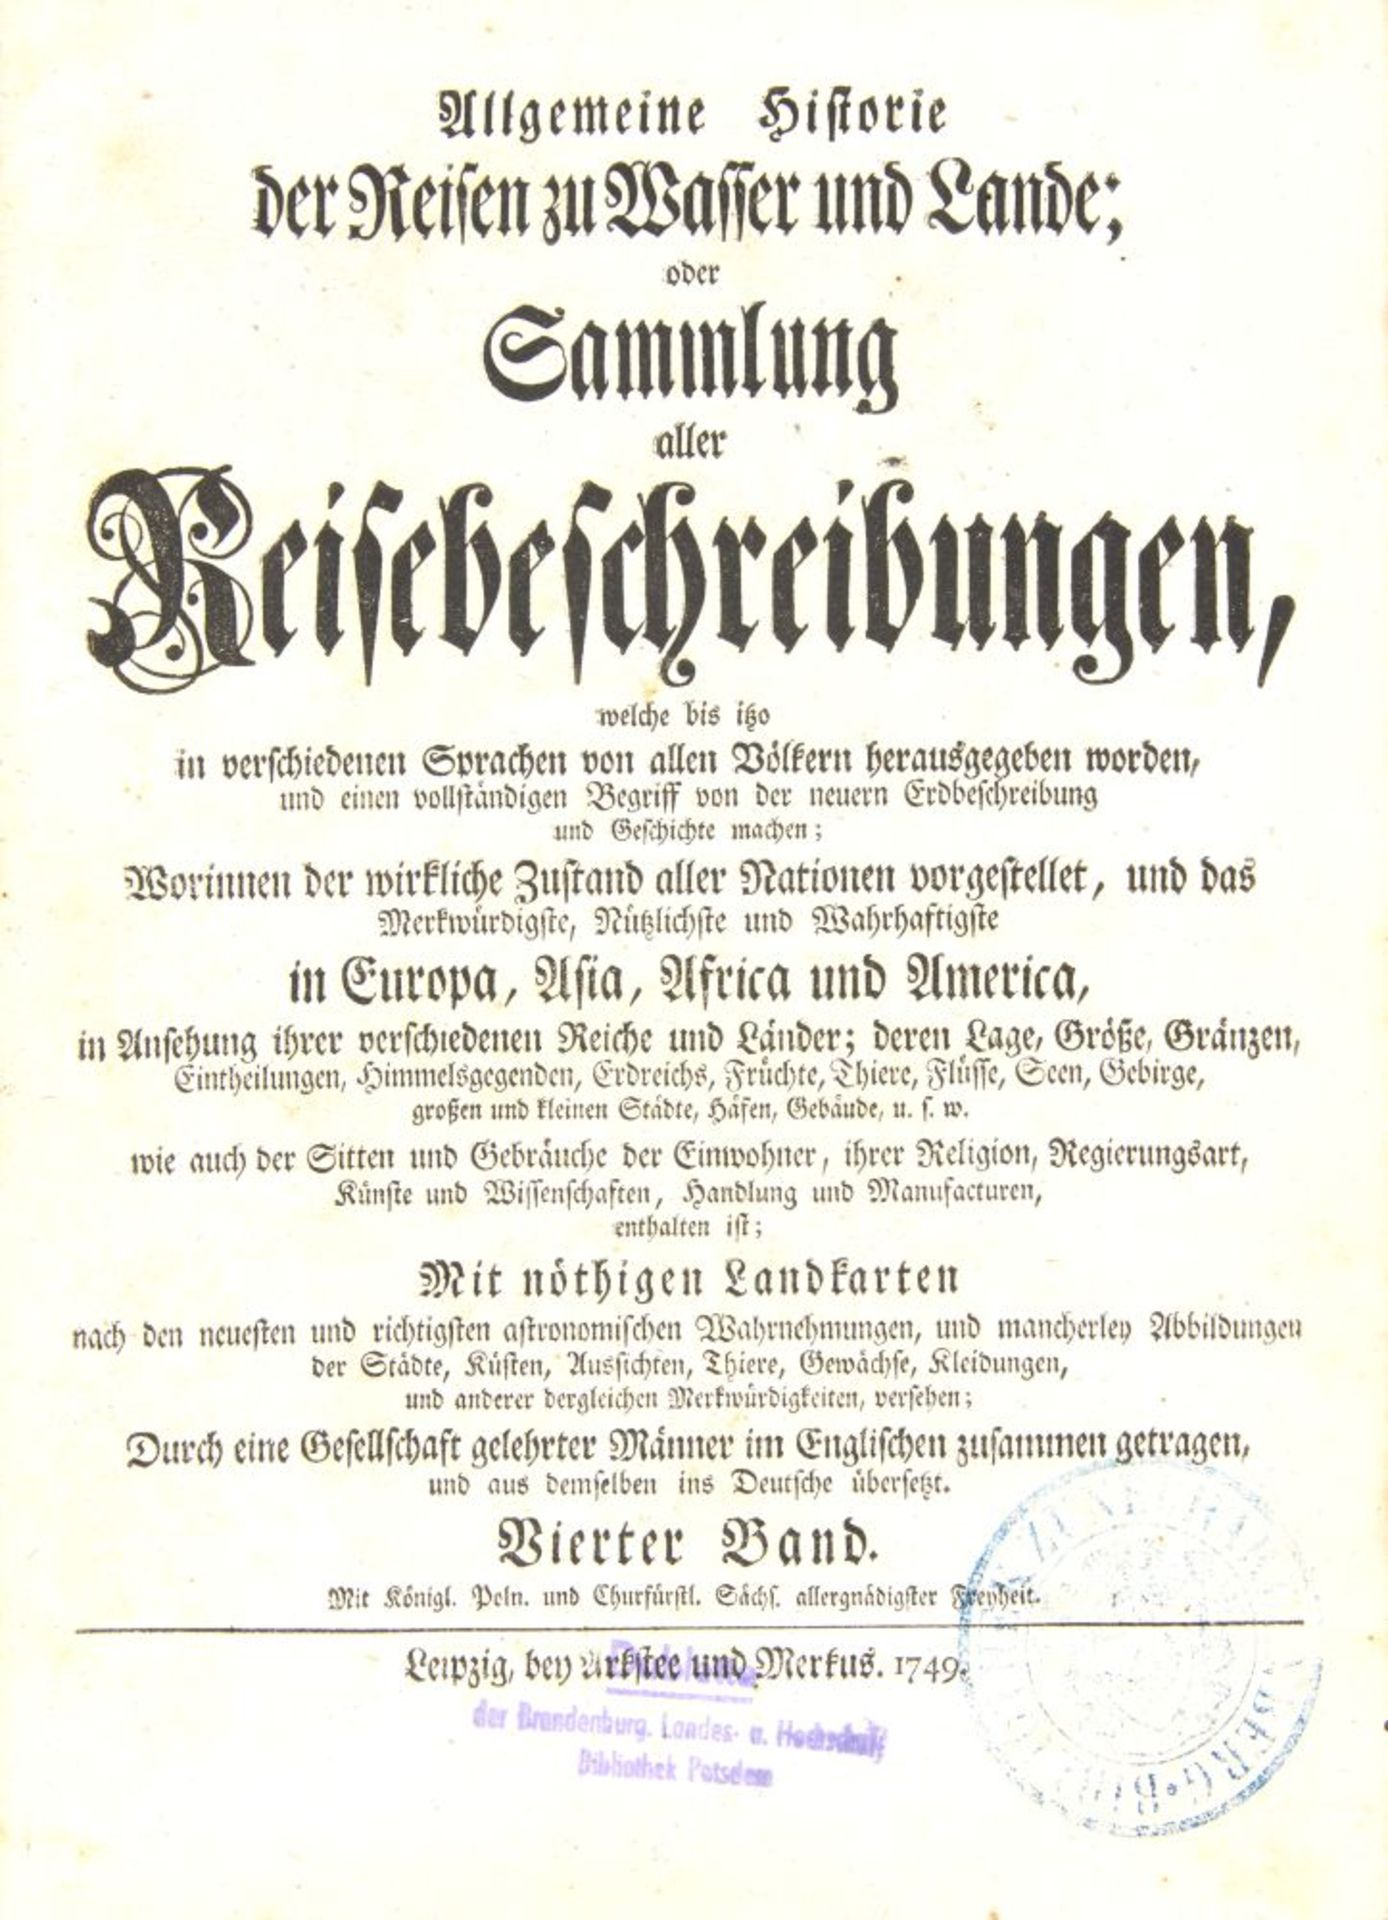 J. J. Schwabe, Reisebeschreibungen, Bd. IV. Lpz 1749. - Image 2 of 4